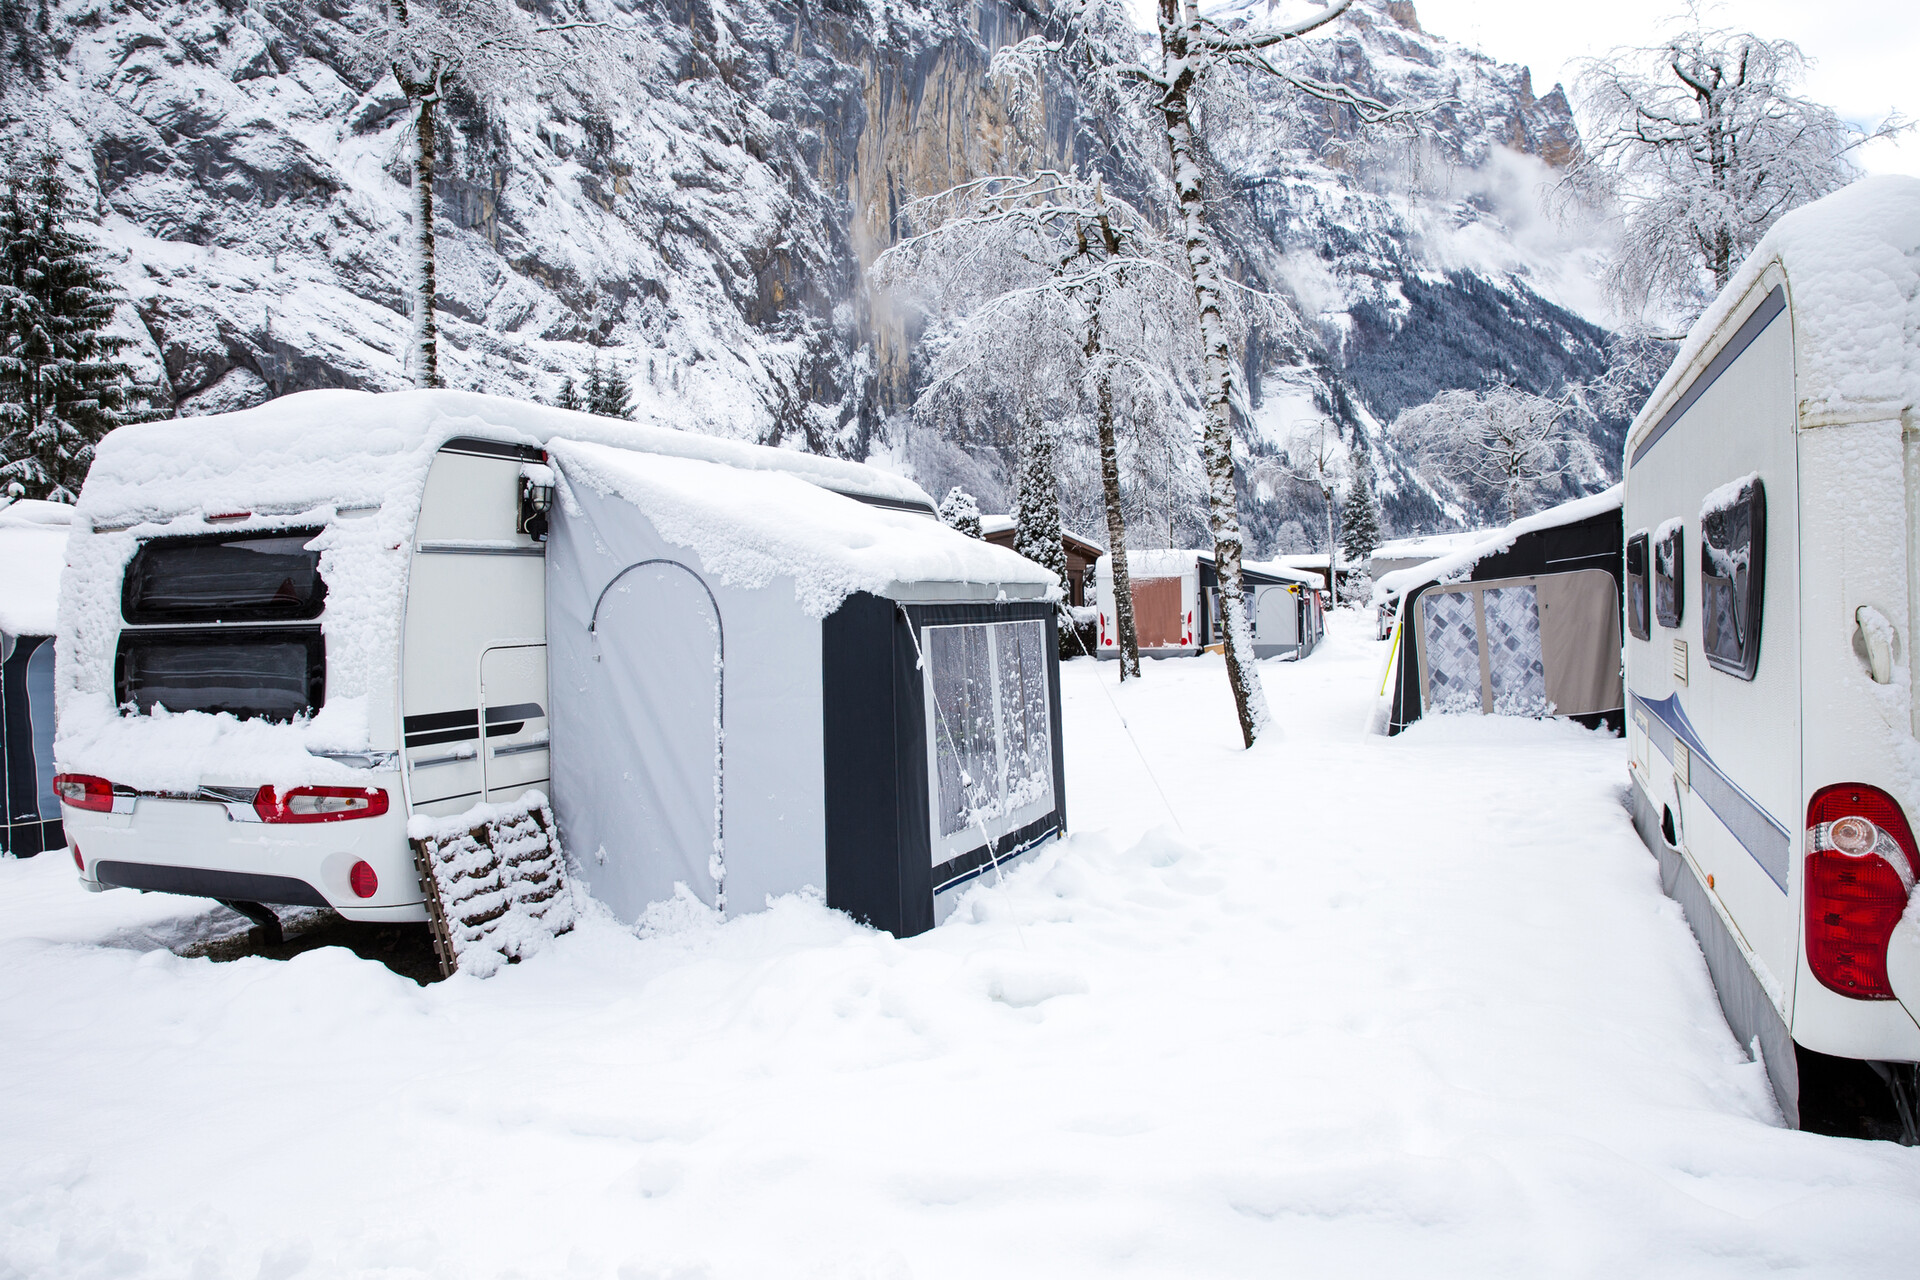 Séjour à la neige en camping car : les conseils indispensables à connaitre